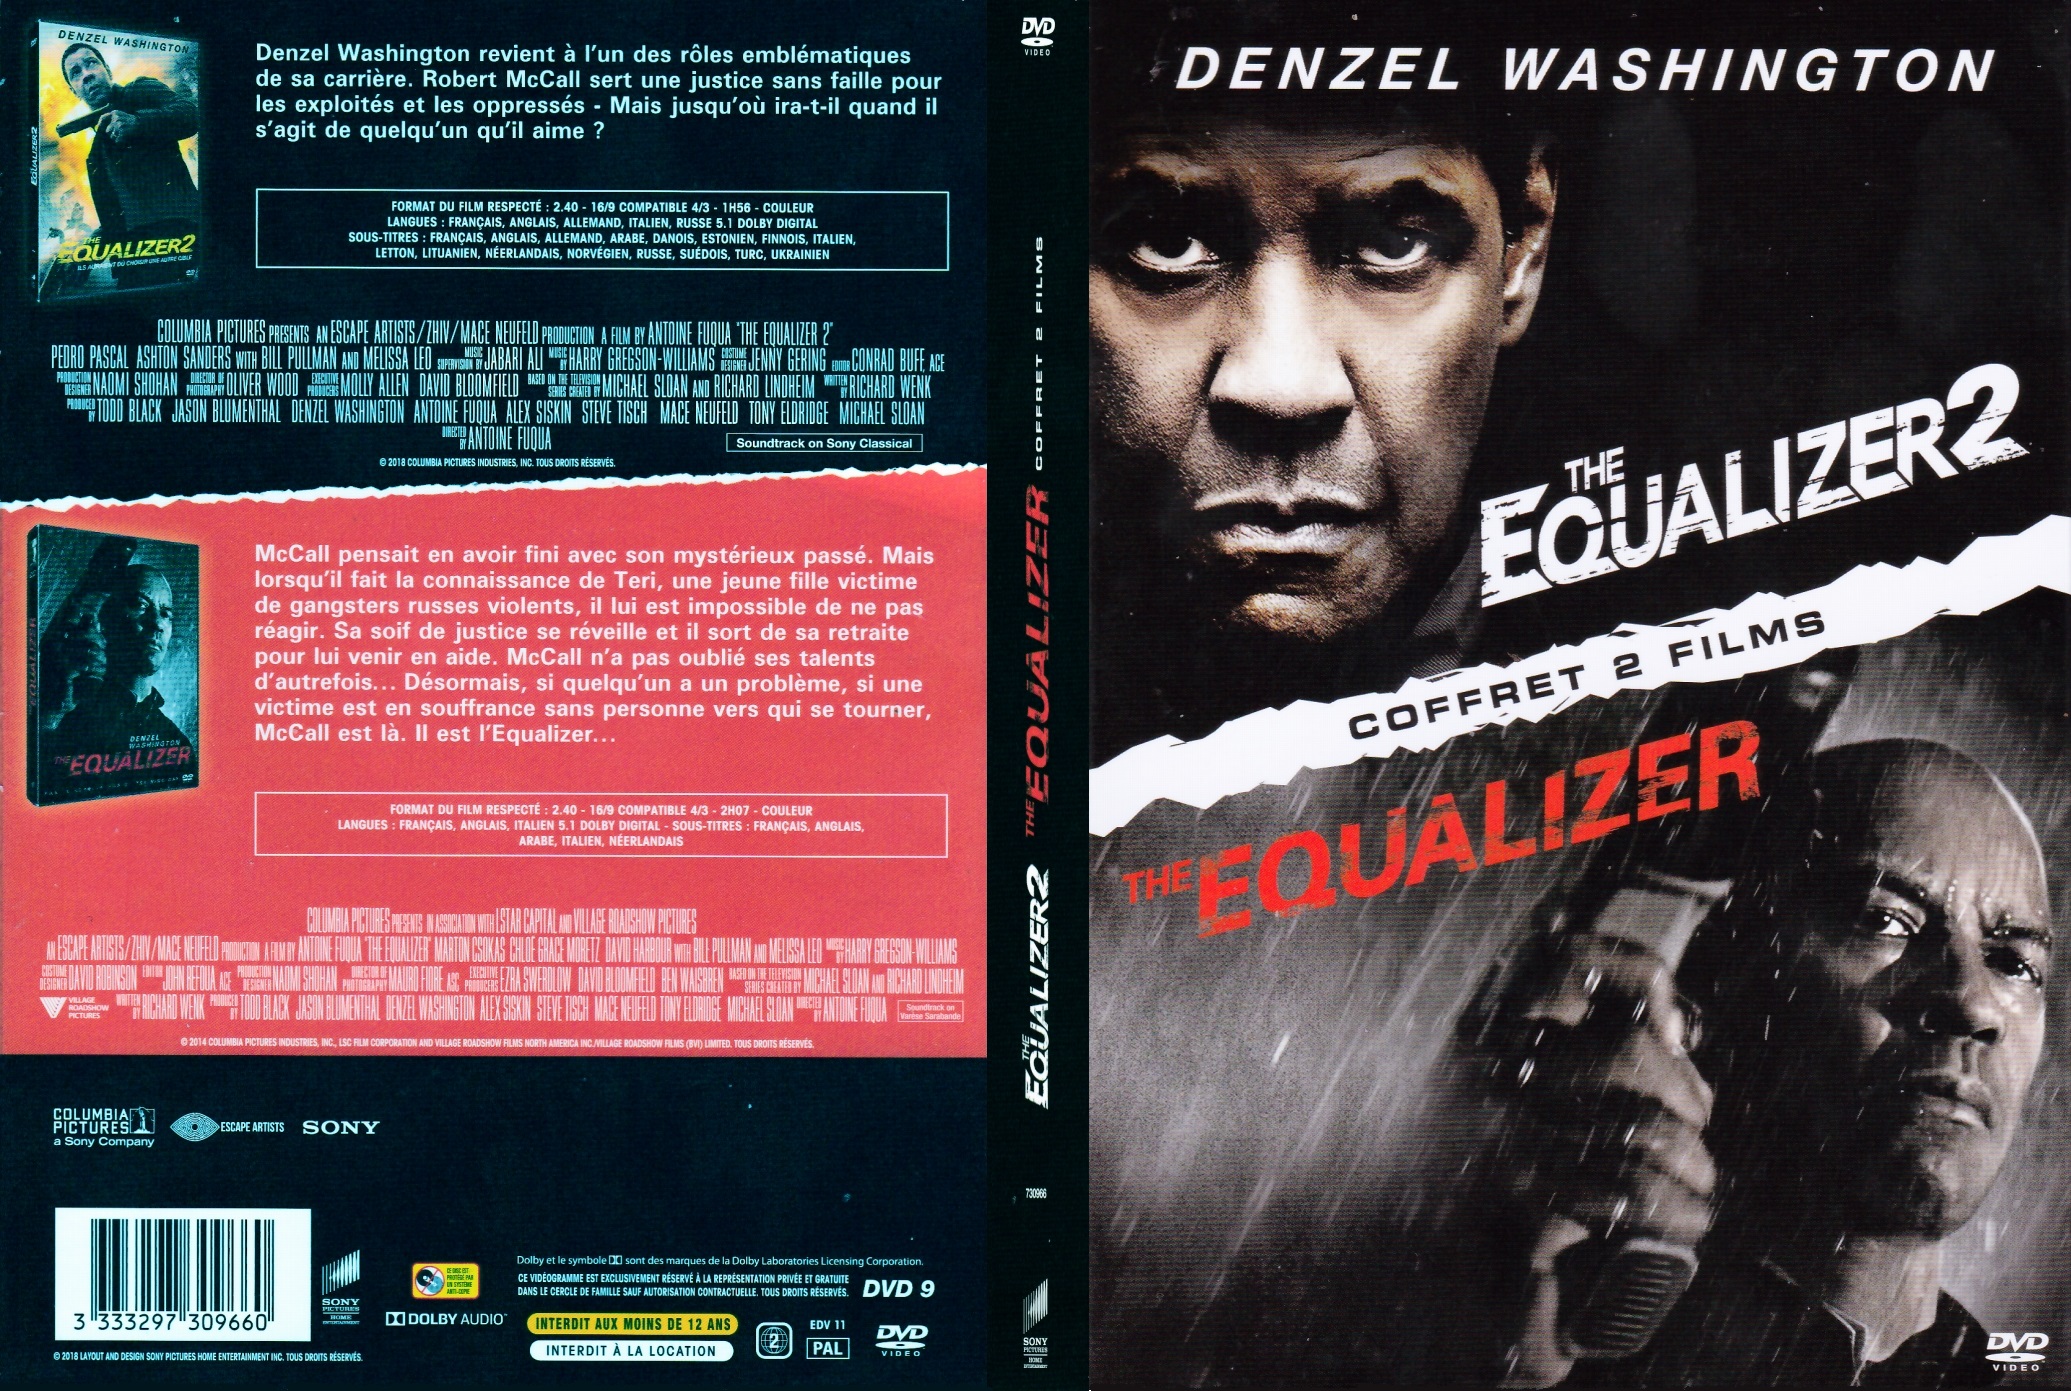 Jaquette DVD Equalizer Coffret 2 Films